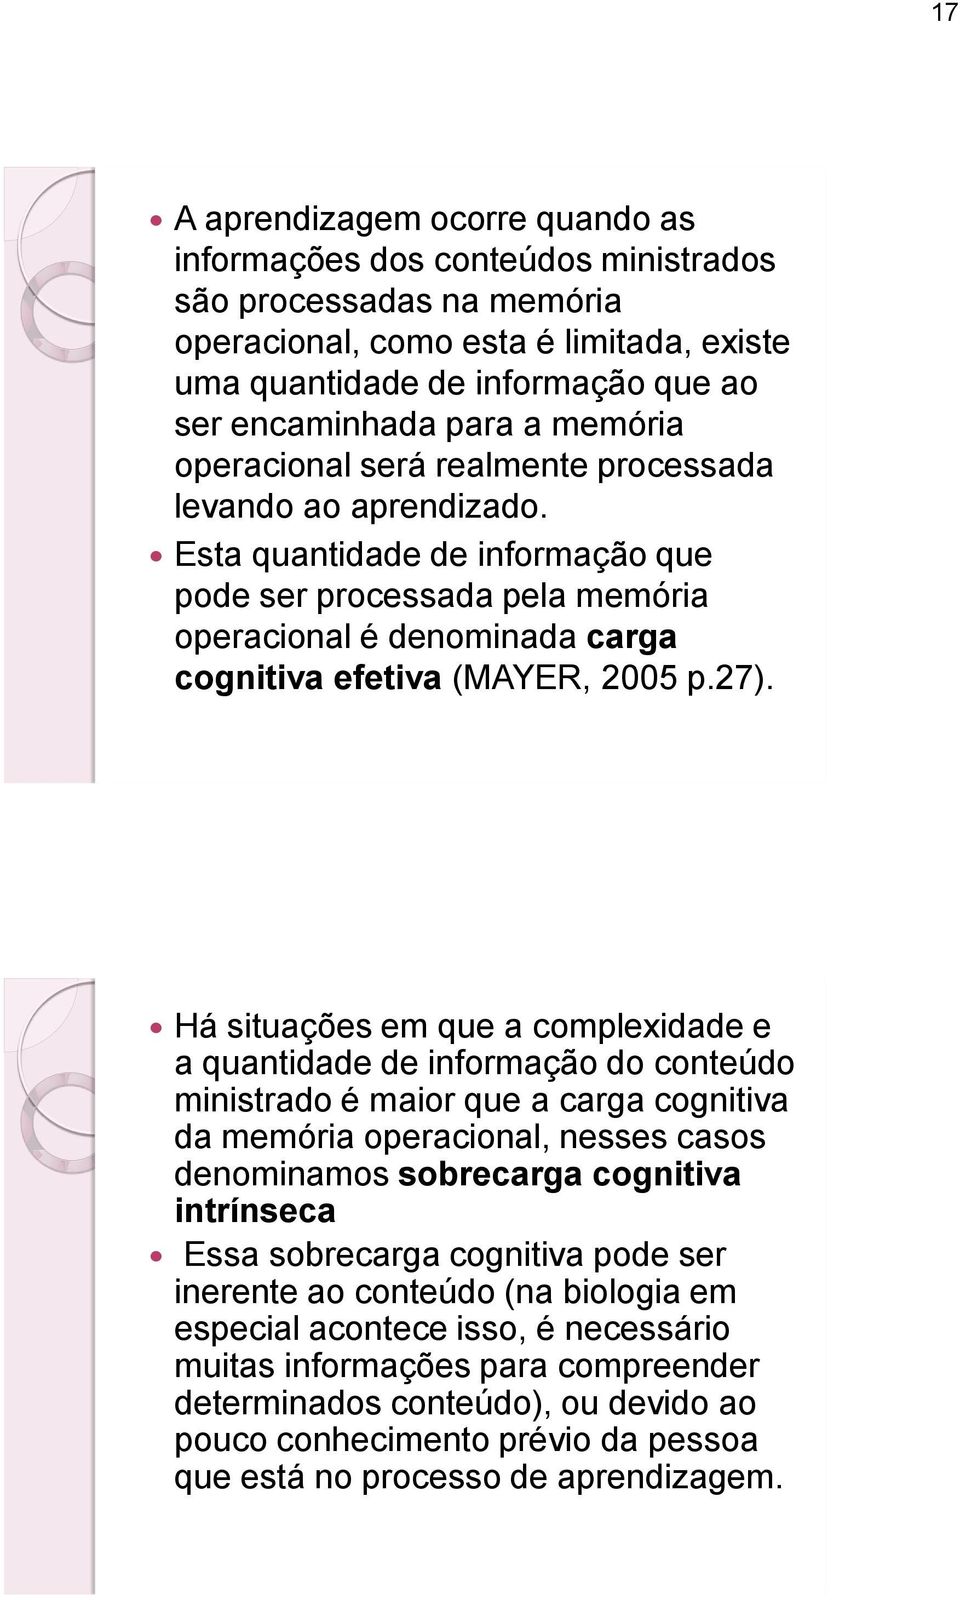 Esta quantidade de informação que pode ser processada pela memória operacional é denominada carga cognitiva efetiva (MAYER, 2005 p.27).